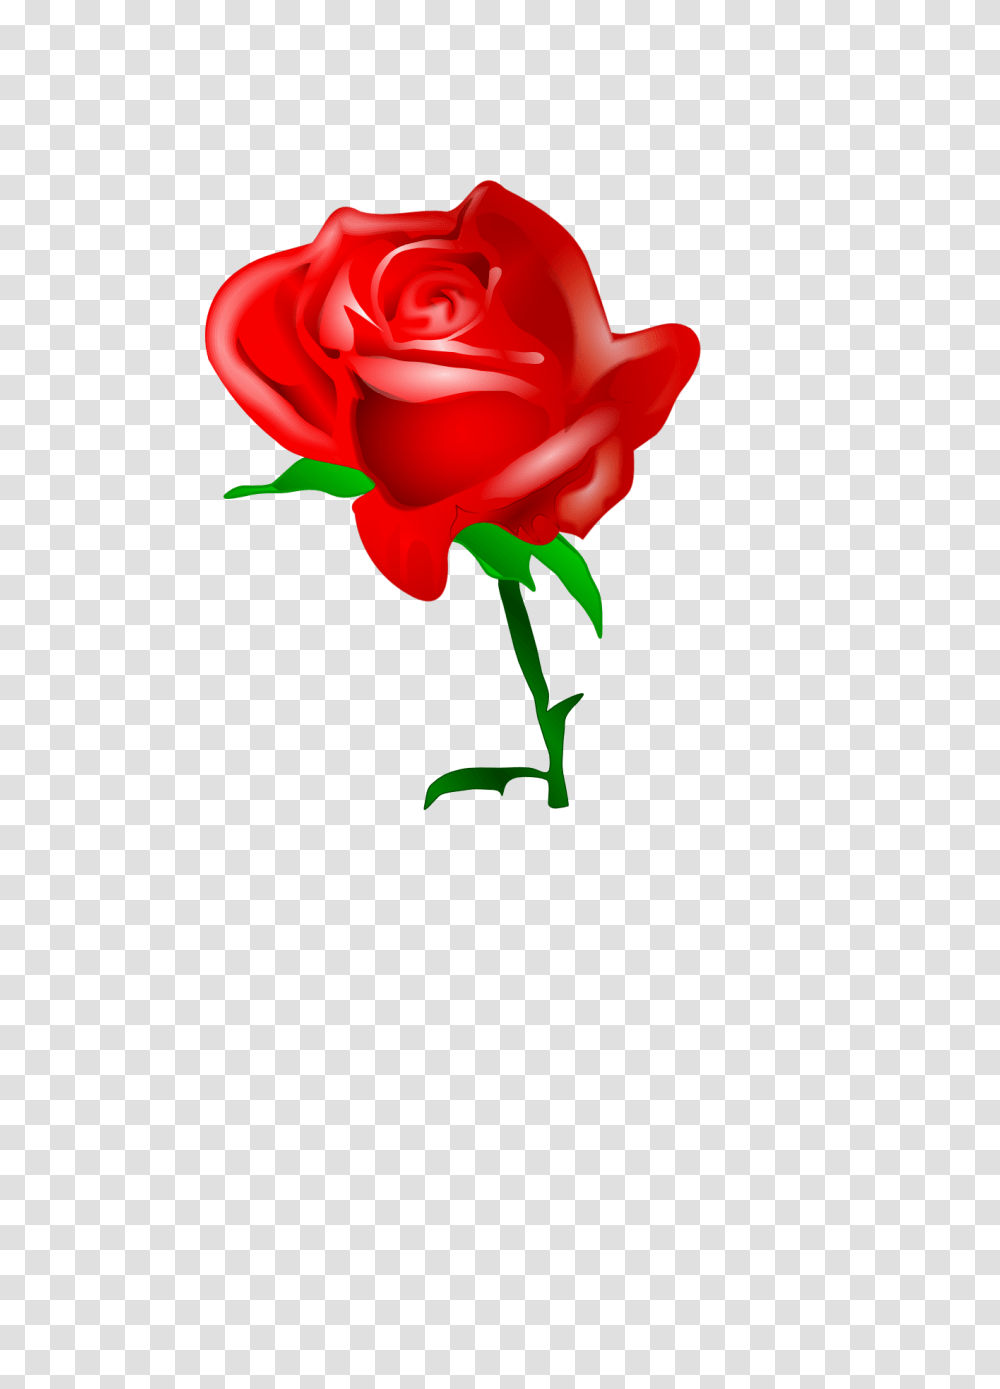 Rose Vine Border Clip Art Red, Flower, Plant, Blossom, Petal Transparent Png